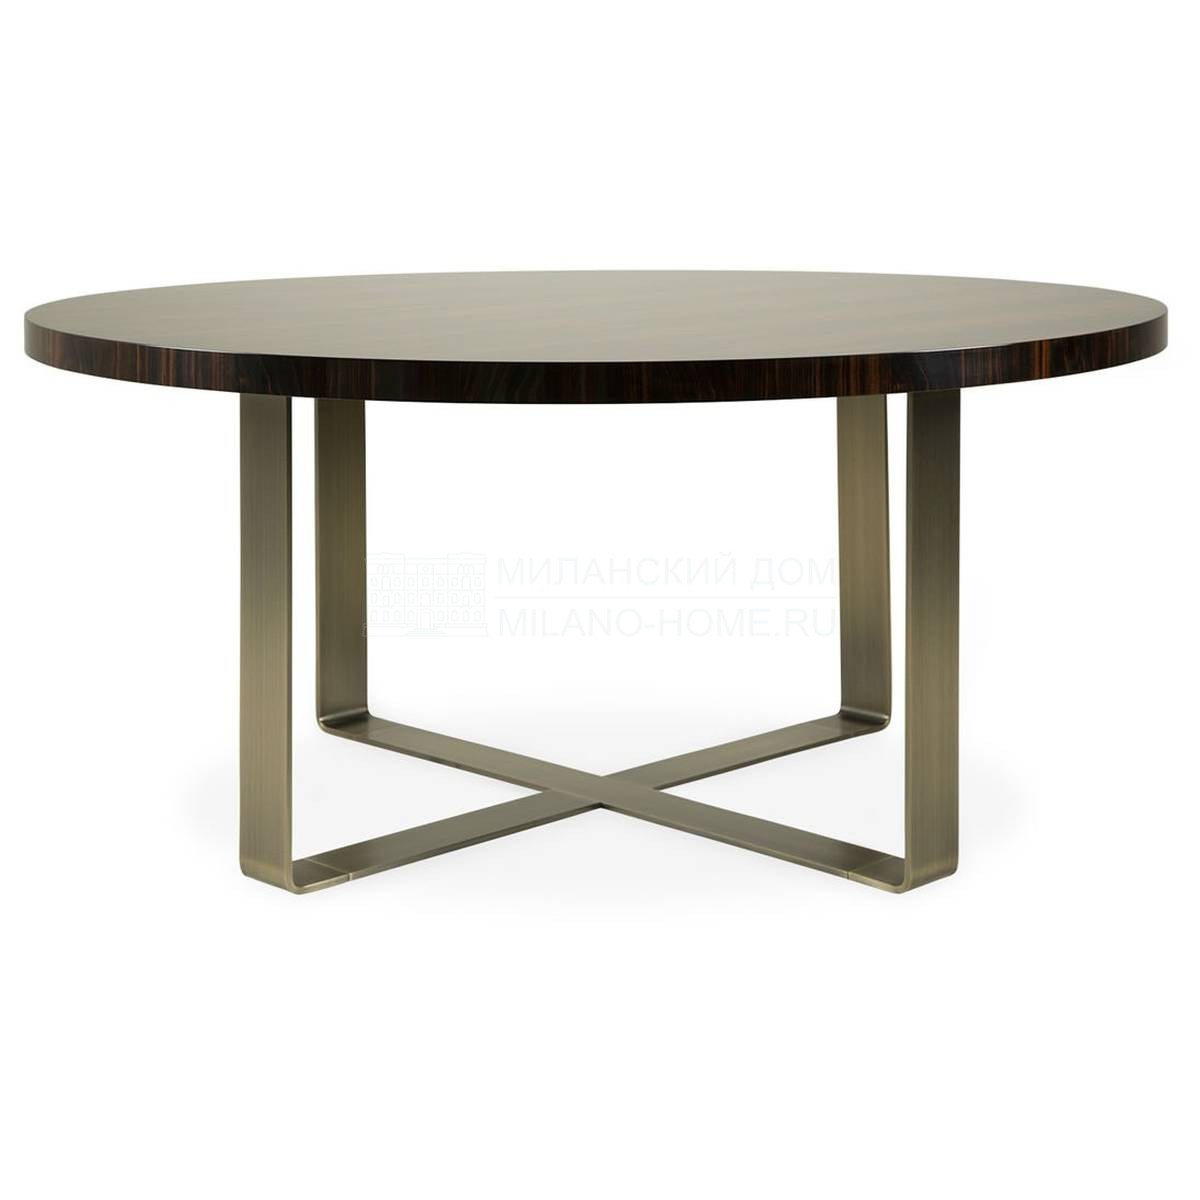 Круглый стол Pierre dining table из Великобритании фабрики THE SOFA & CHAIR Company